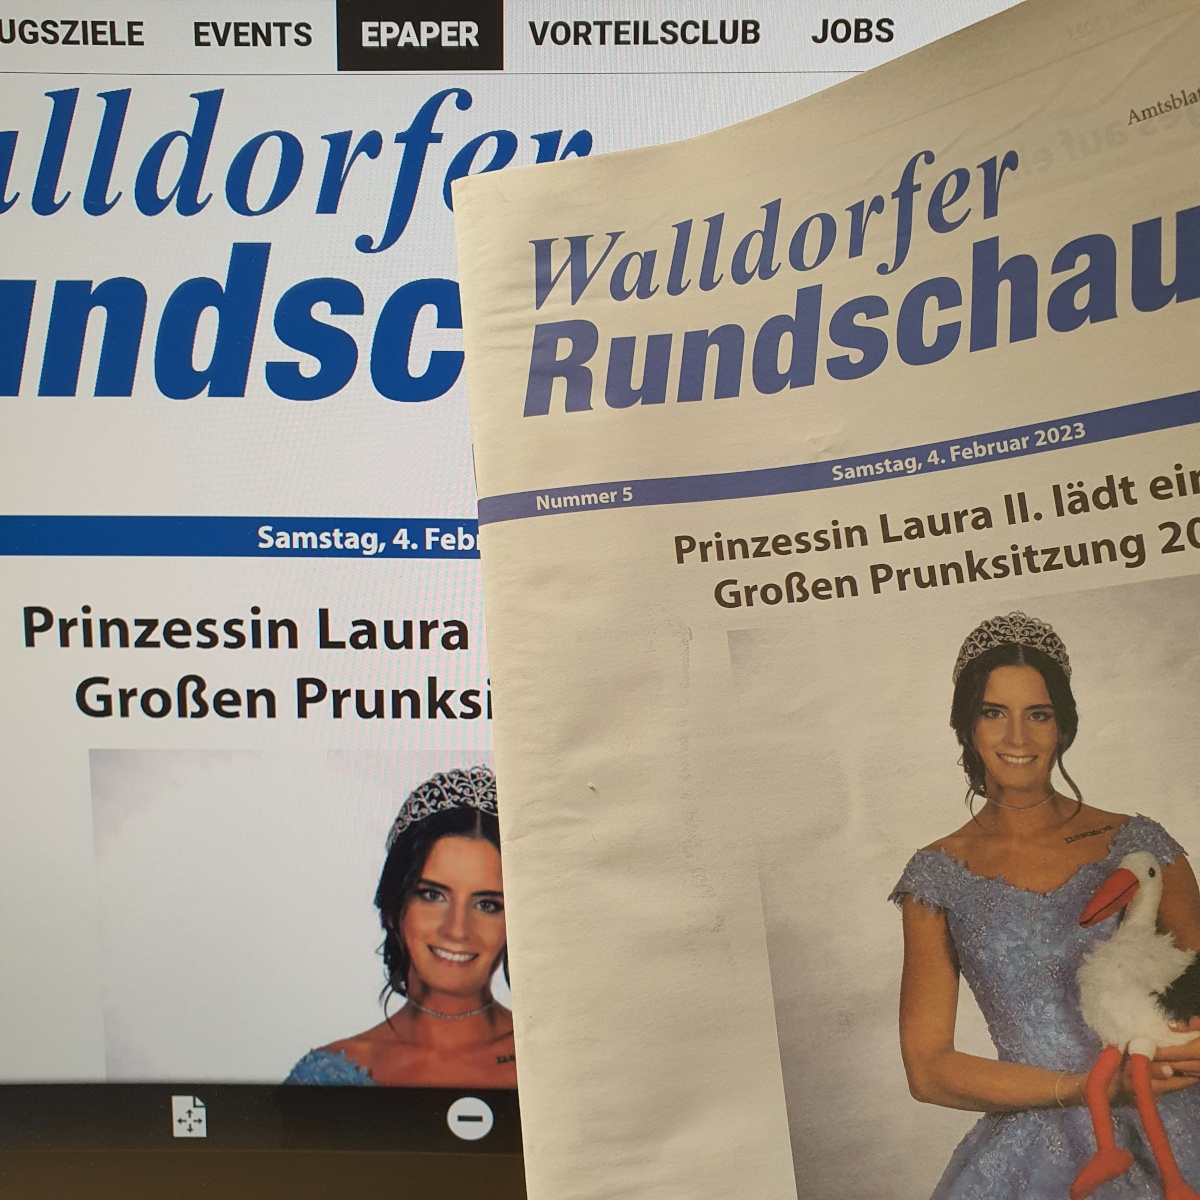 Die Walldorfer Rundschau 2023 Nr. 5 | Foto: Dr. Clemens Kriesel